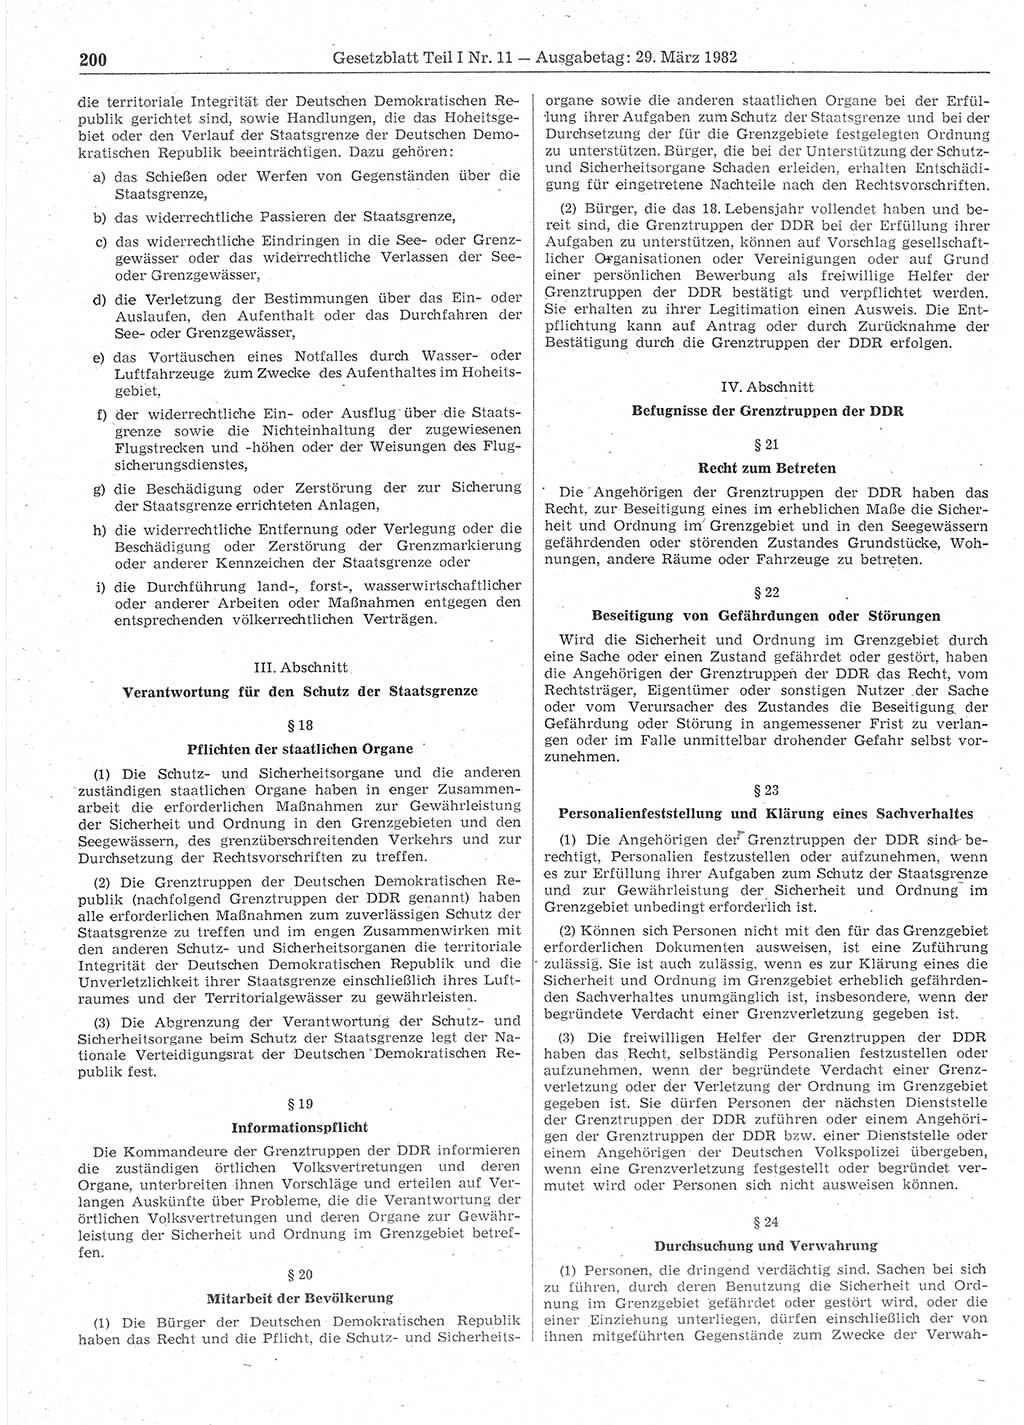 Gesetzblatt (GBl.) der Deutschen Demokratischen Republik (DDR) Teil Ⅰ 1982, Seite 200 (GBl. DDR Ⅰ 1982, S. 200)